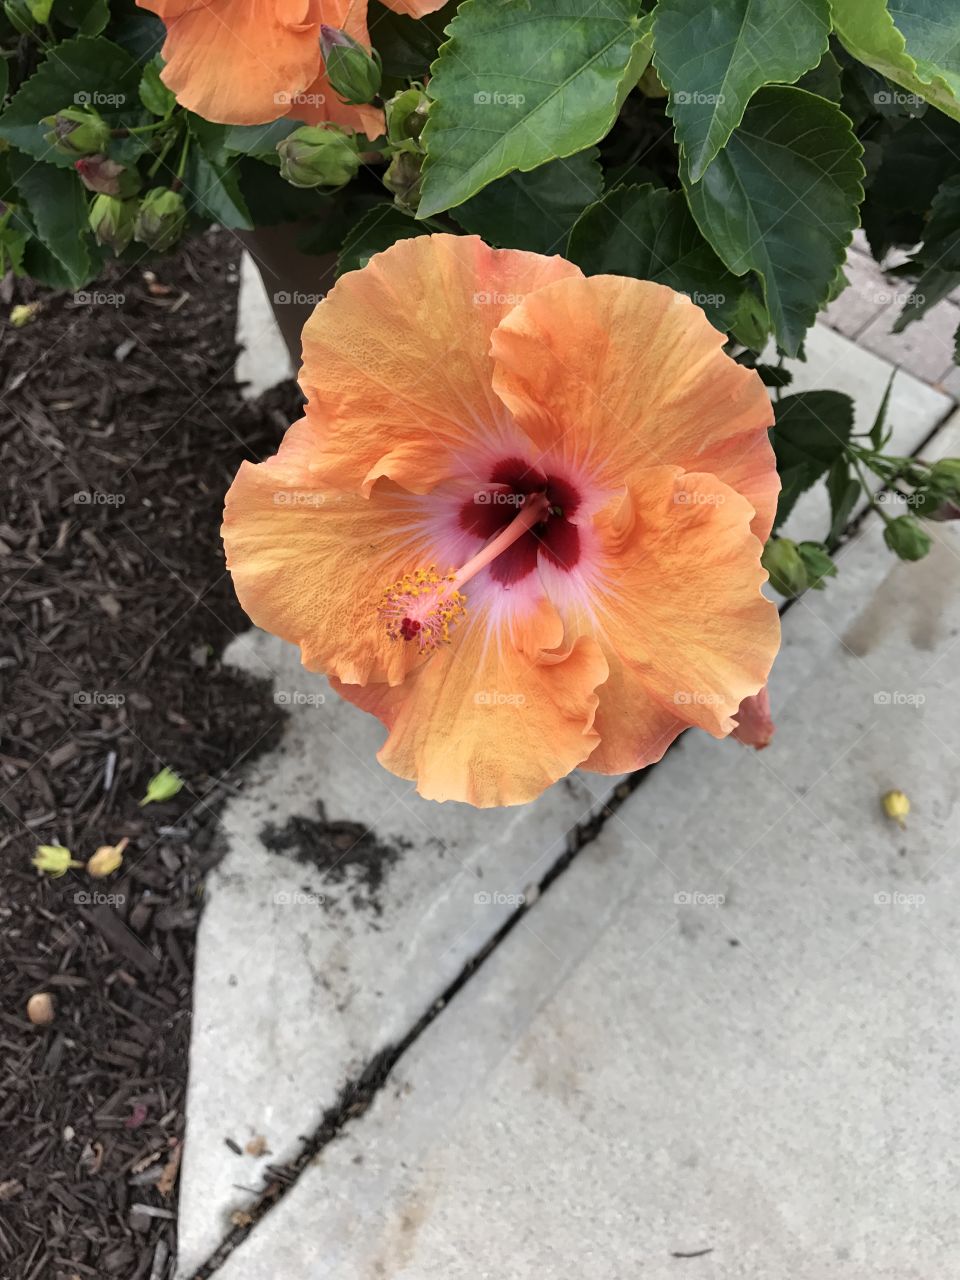 Hibiscus flower on campus!